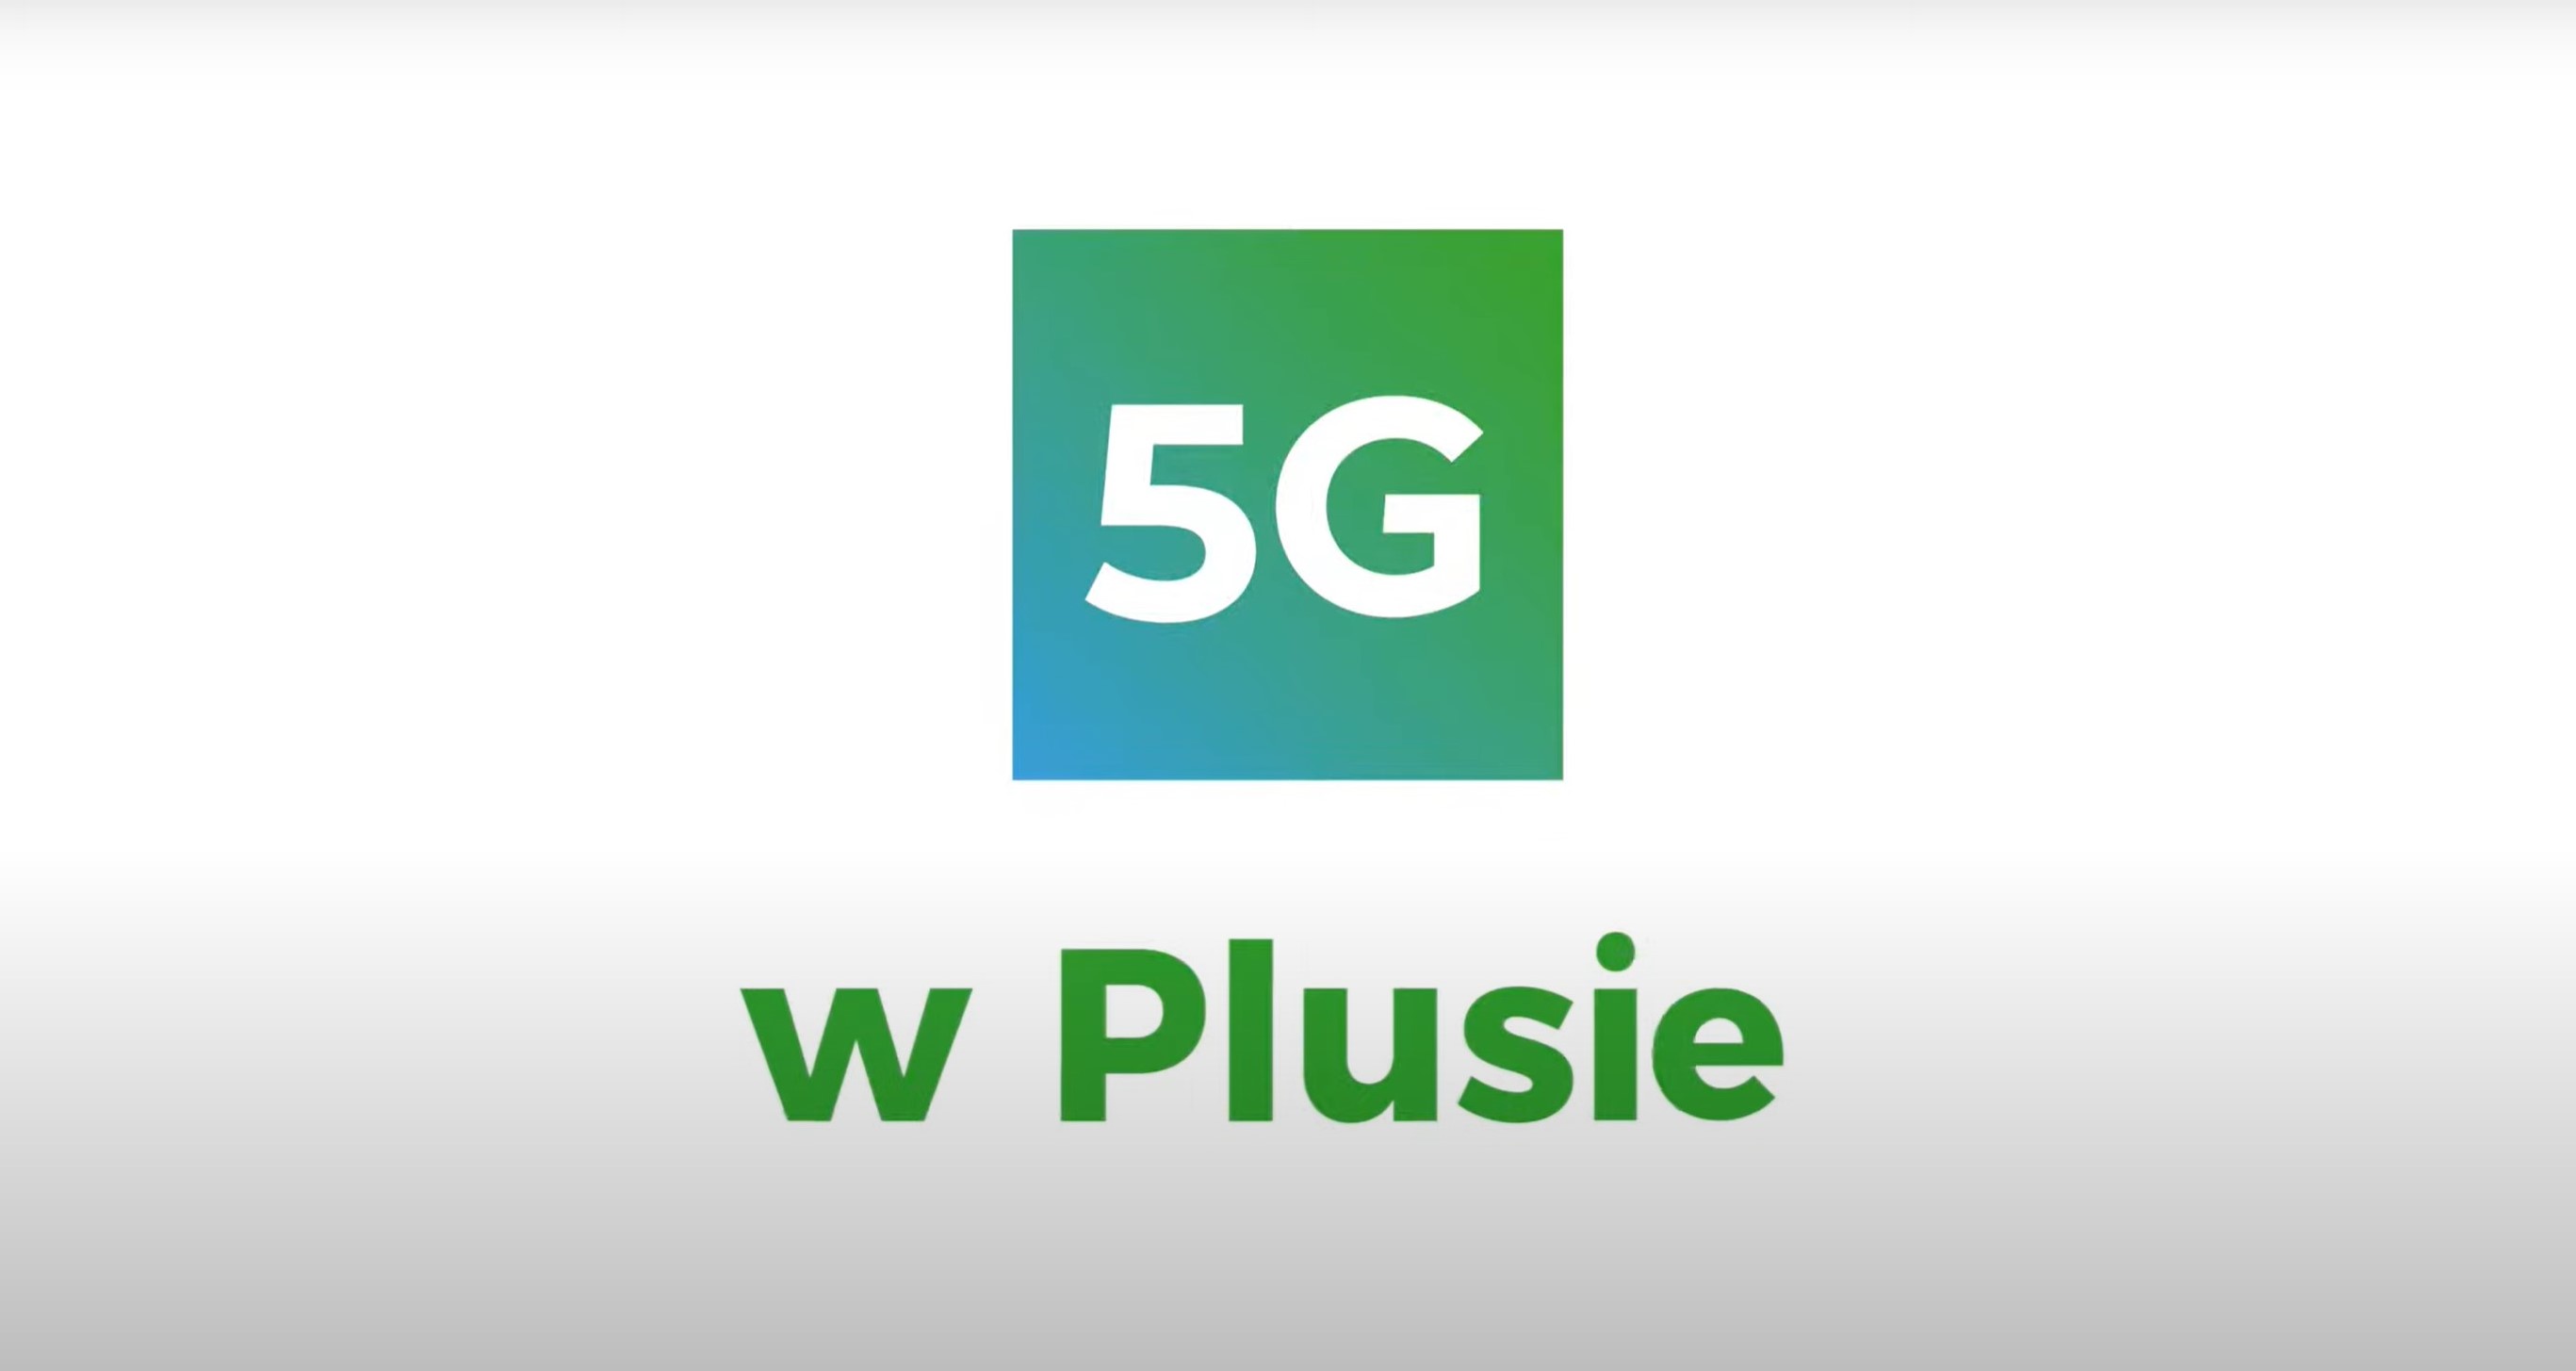 Plus jest jedną z sieci, która uruchomiła już sieć 5G w Polsce